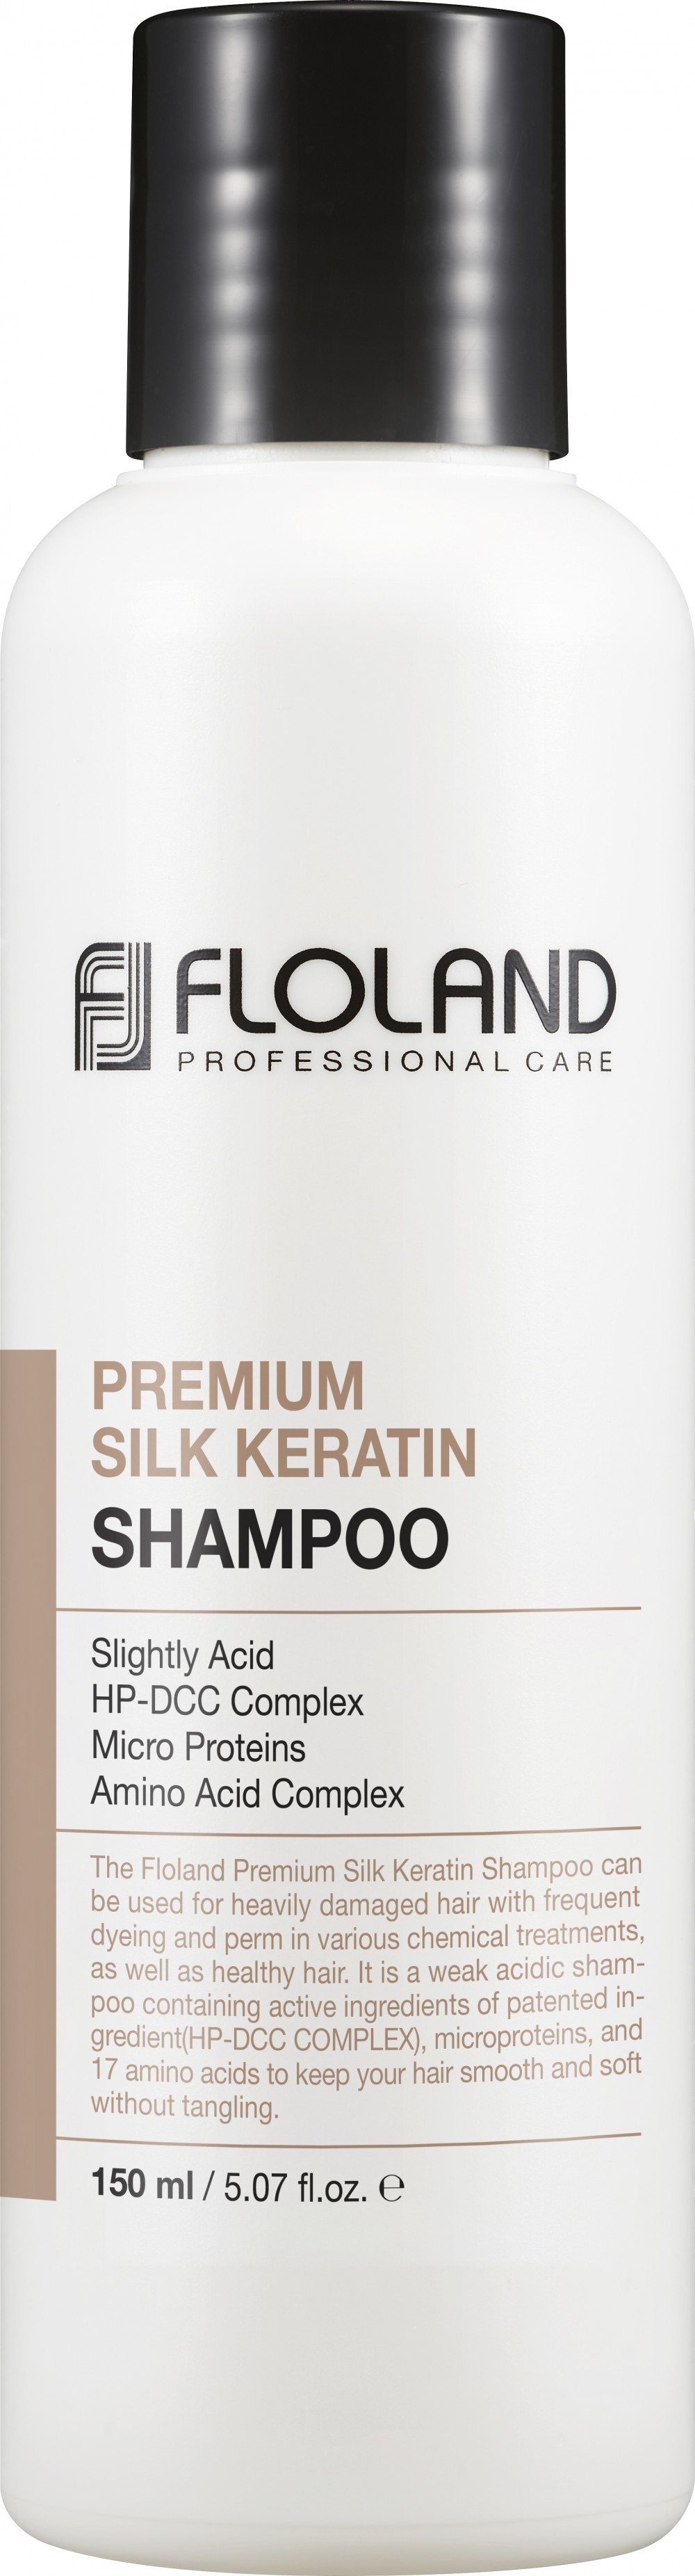 FLOLAND Premium Silk Keratin hidratáló, hajregeneráló sampon 17 féle aminosavval 150 ml